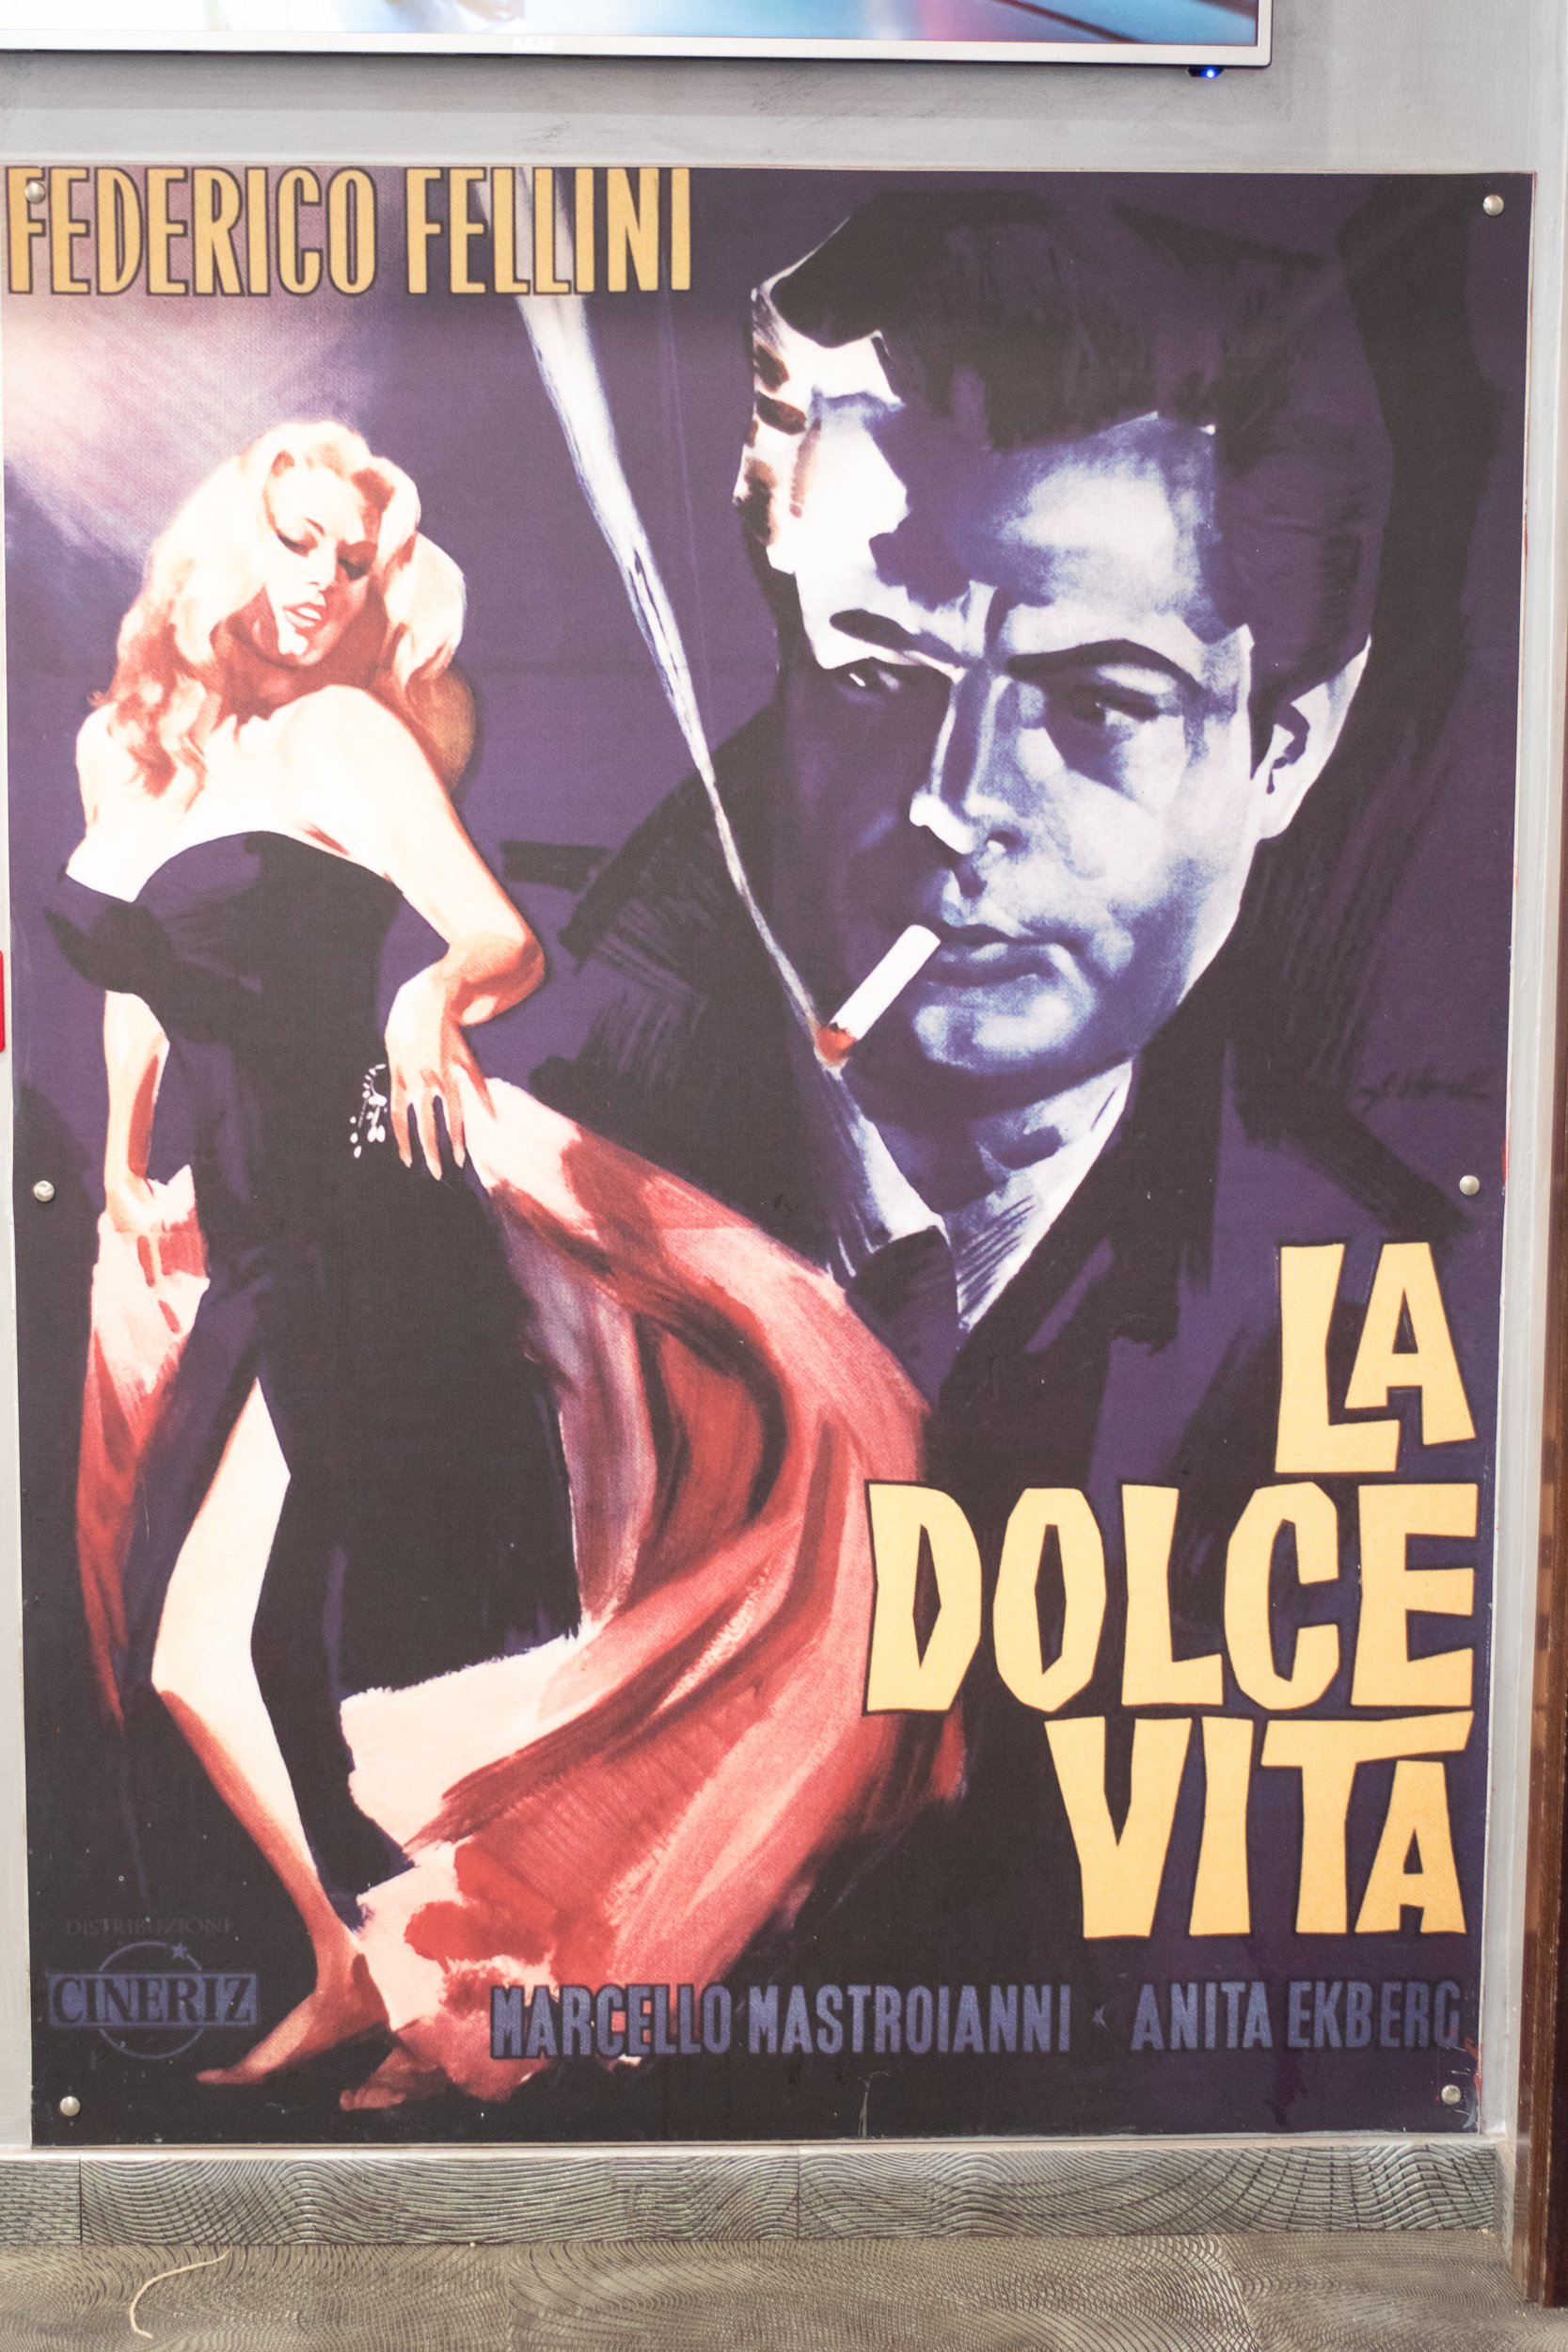 Fellini Movies - La Dolce Vita